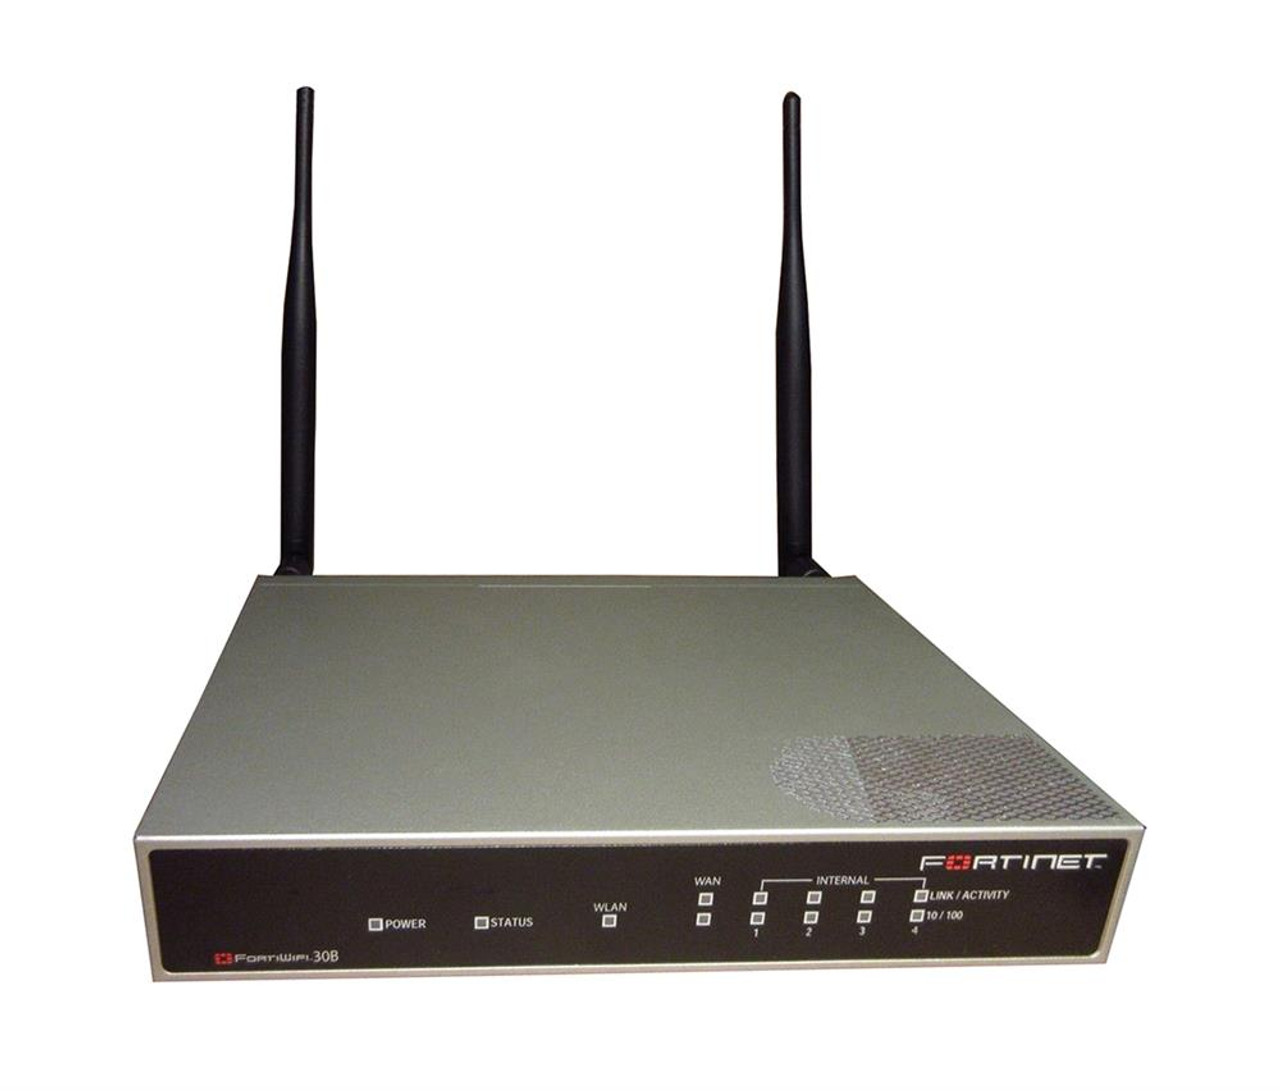 Fortinet FortiWiFi-30B Wireless VPN/Firewall - 5 Port - Fast Ethernet - 12.50 MB/s Firewall Throughput IEEE